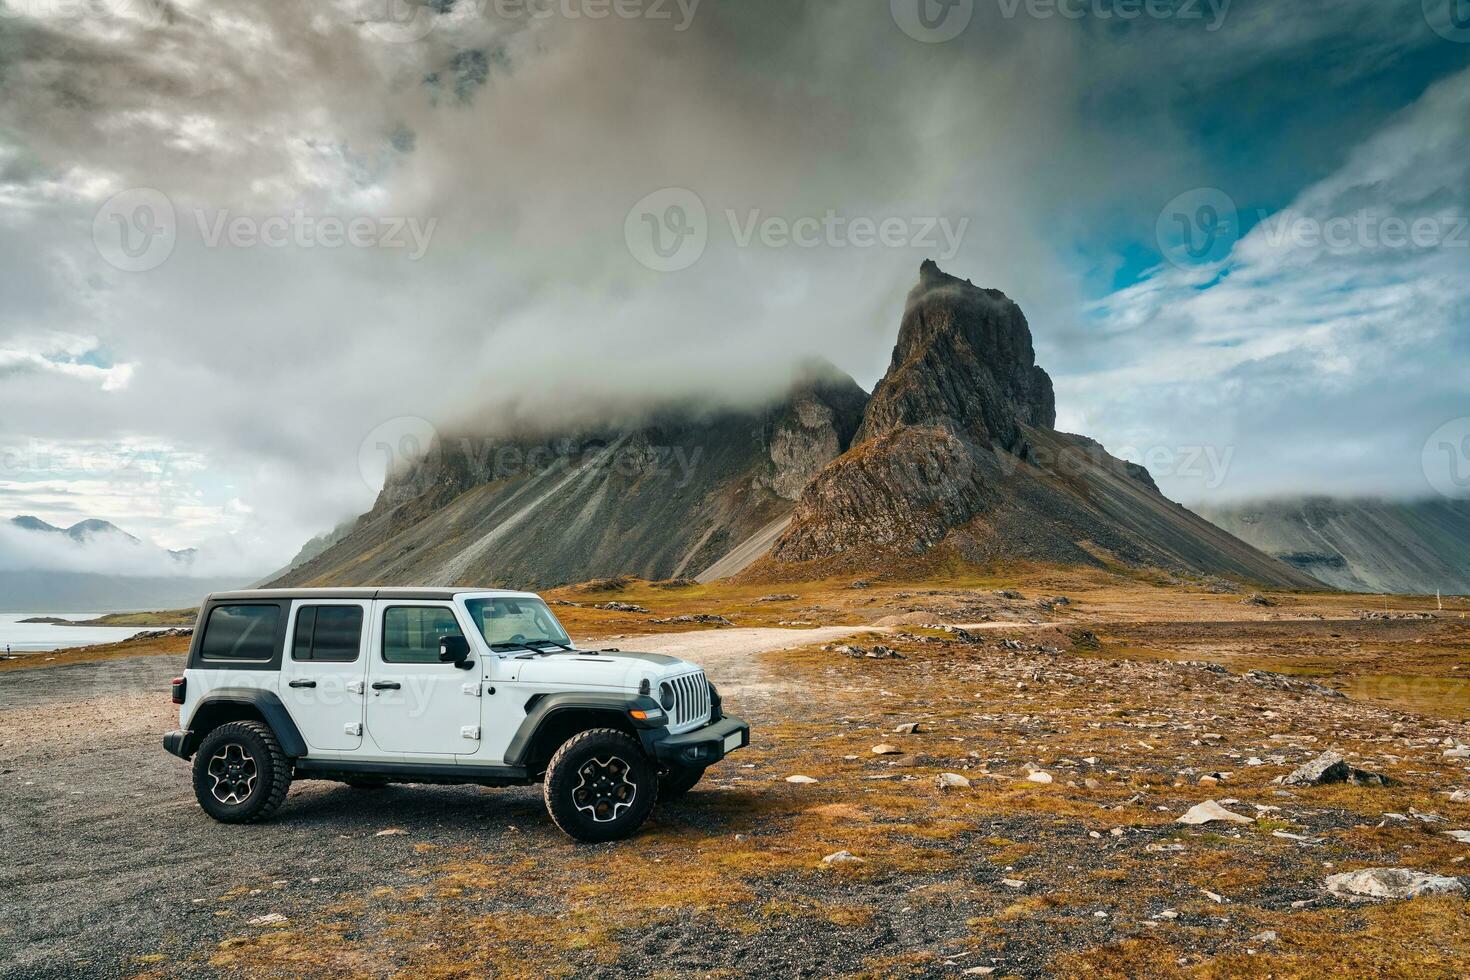 launisch eystrahorn oder krossnesfjall Berg mit nebelig bedeckt und 4wd Auto geparkt im Sommer- beim Island foto